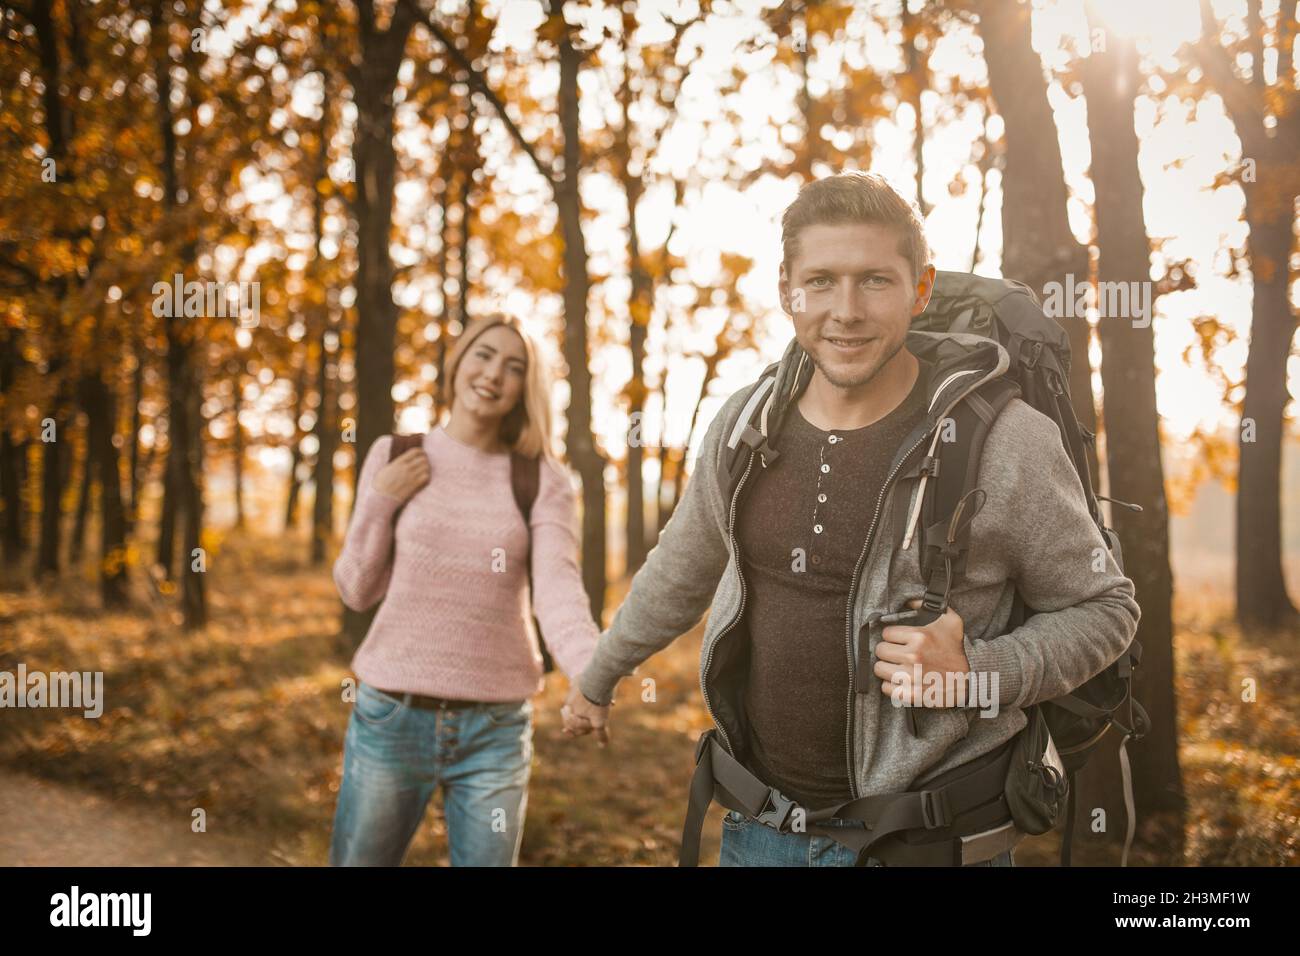 Un couple charmant de voyageurs marchant le long D'UN sentier forestier Banque D'Images